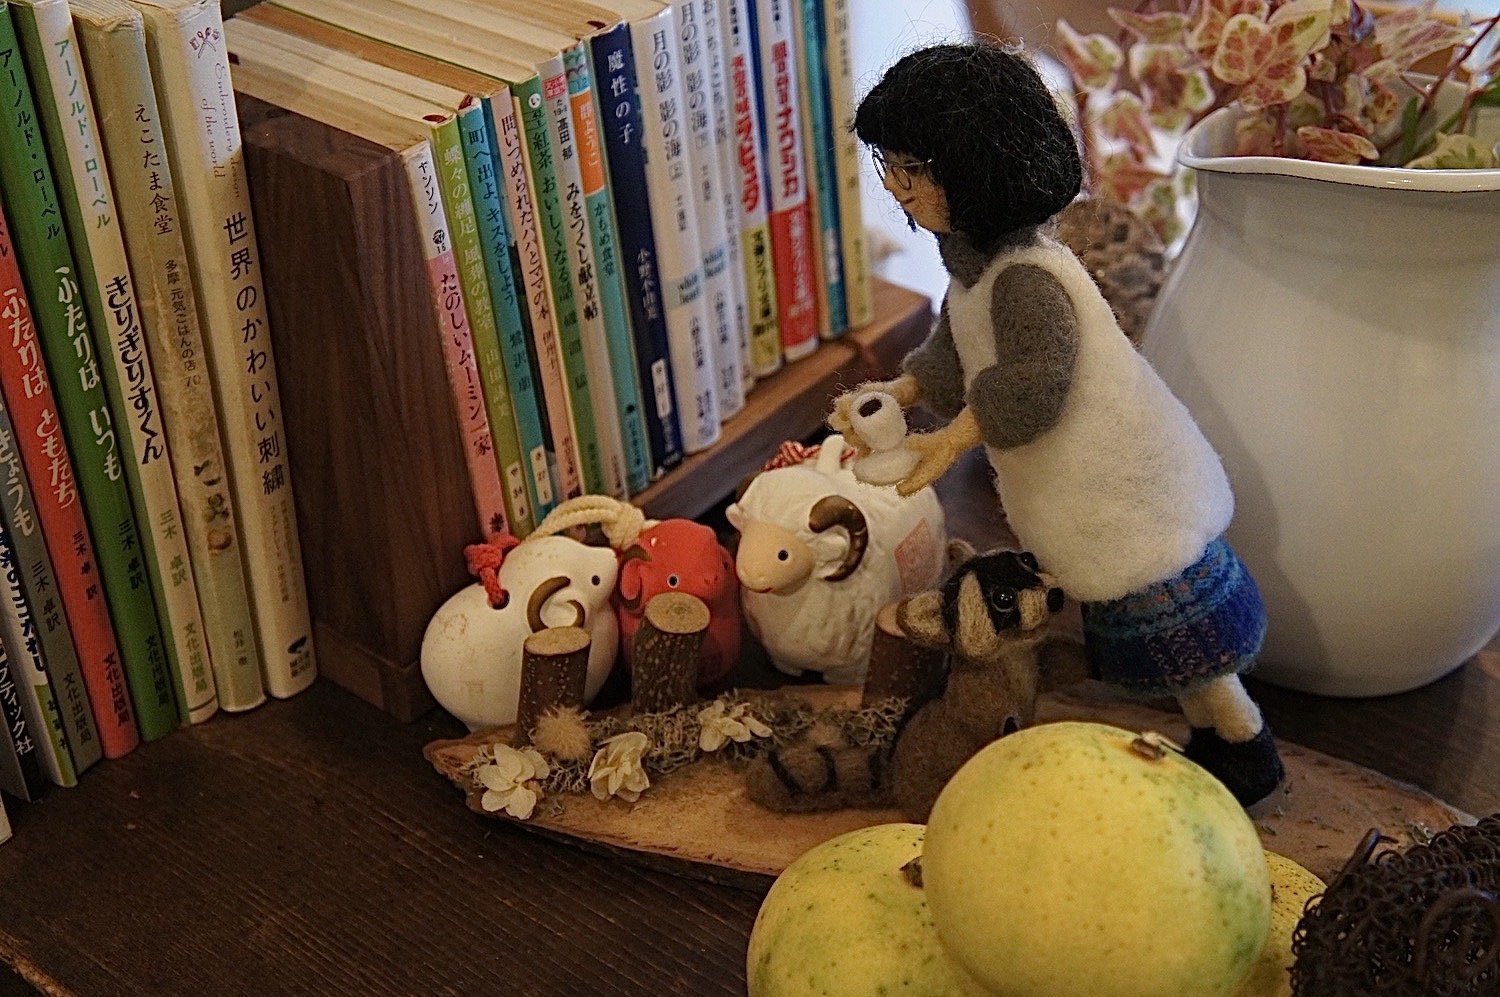 店名にちなんでひつじグッズがそこかしこに顔をのぞかせる。近隣の羊毛作家さん作のウール人形が愛らしい。